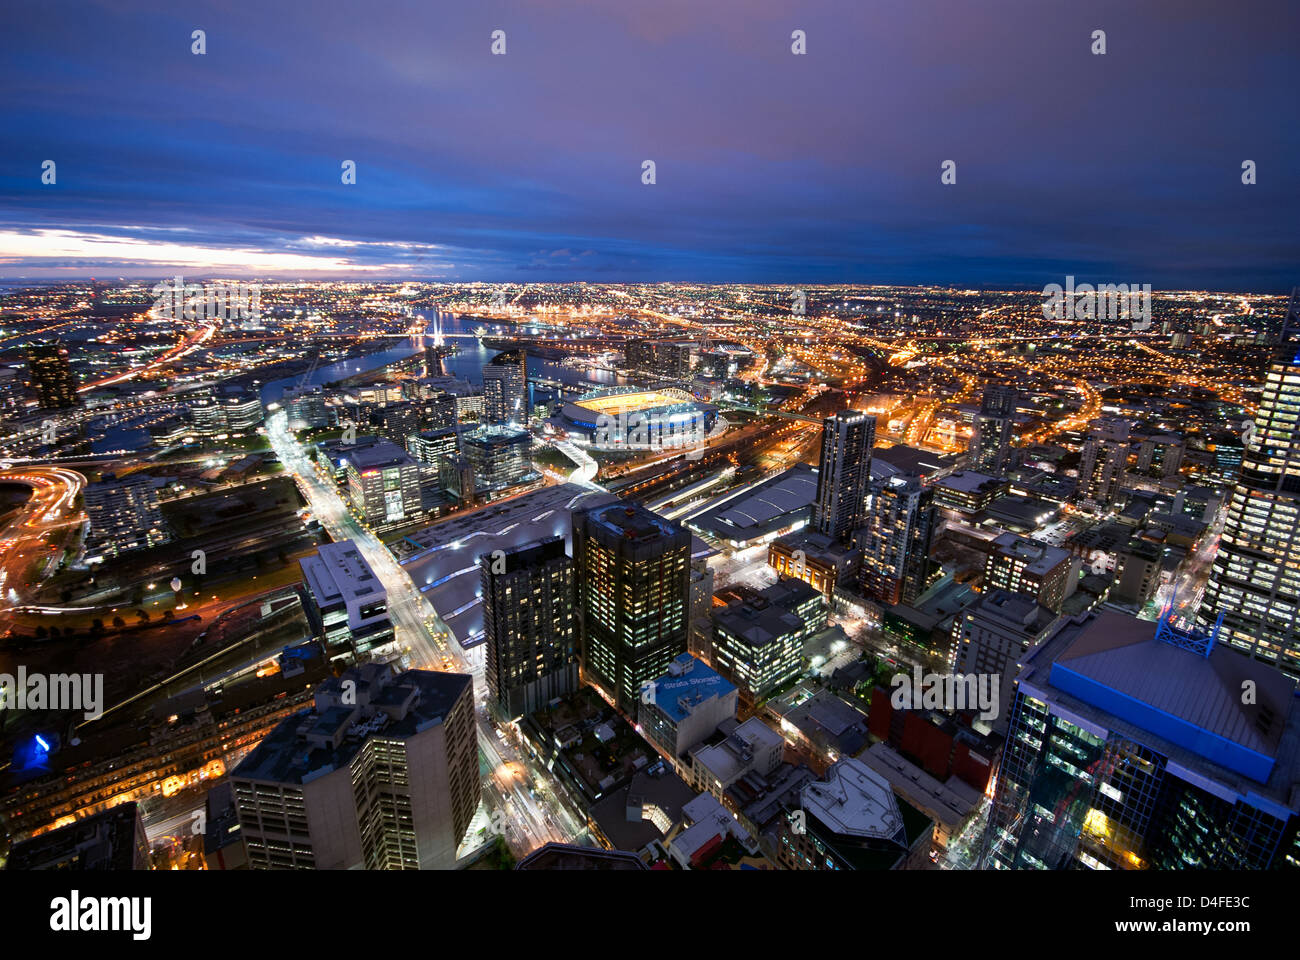 Les lumières de la ville après le coucher du soleil à Melbourne, capitale de l'état australien de Victoria. Banque D'Images